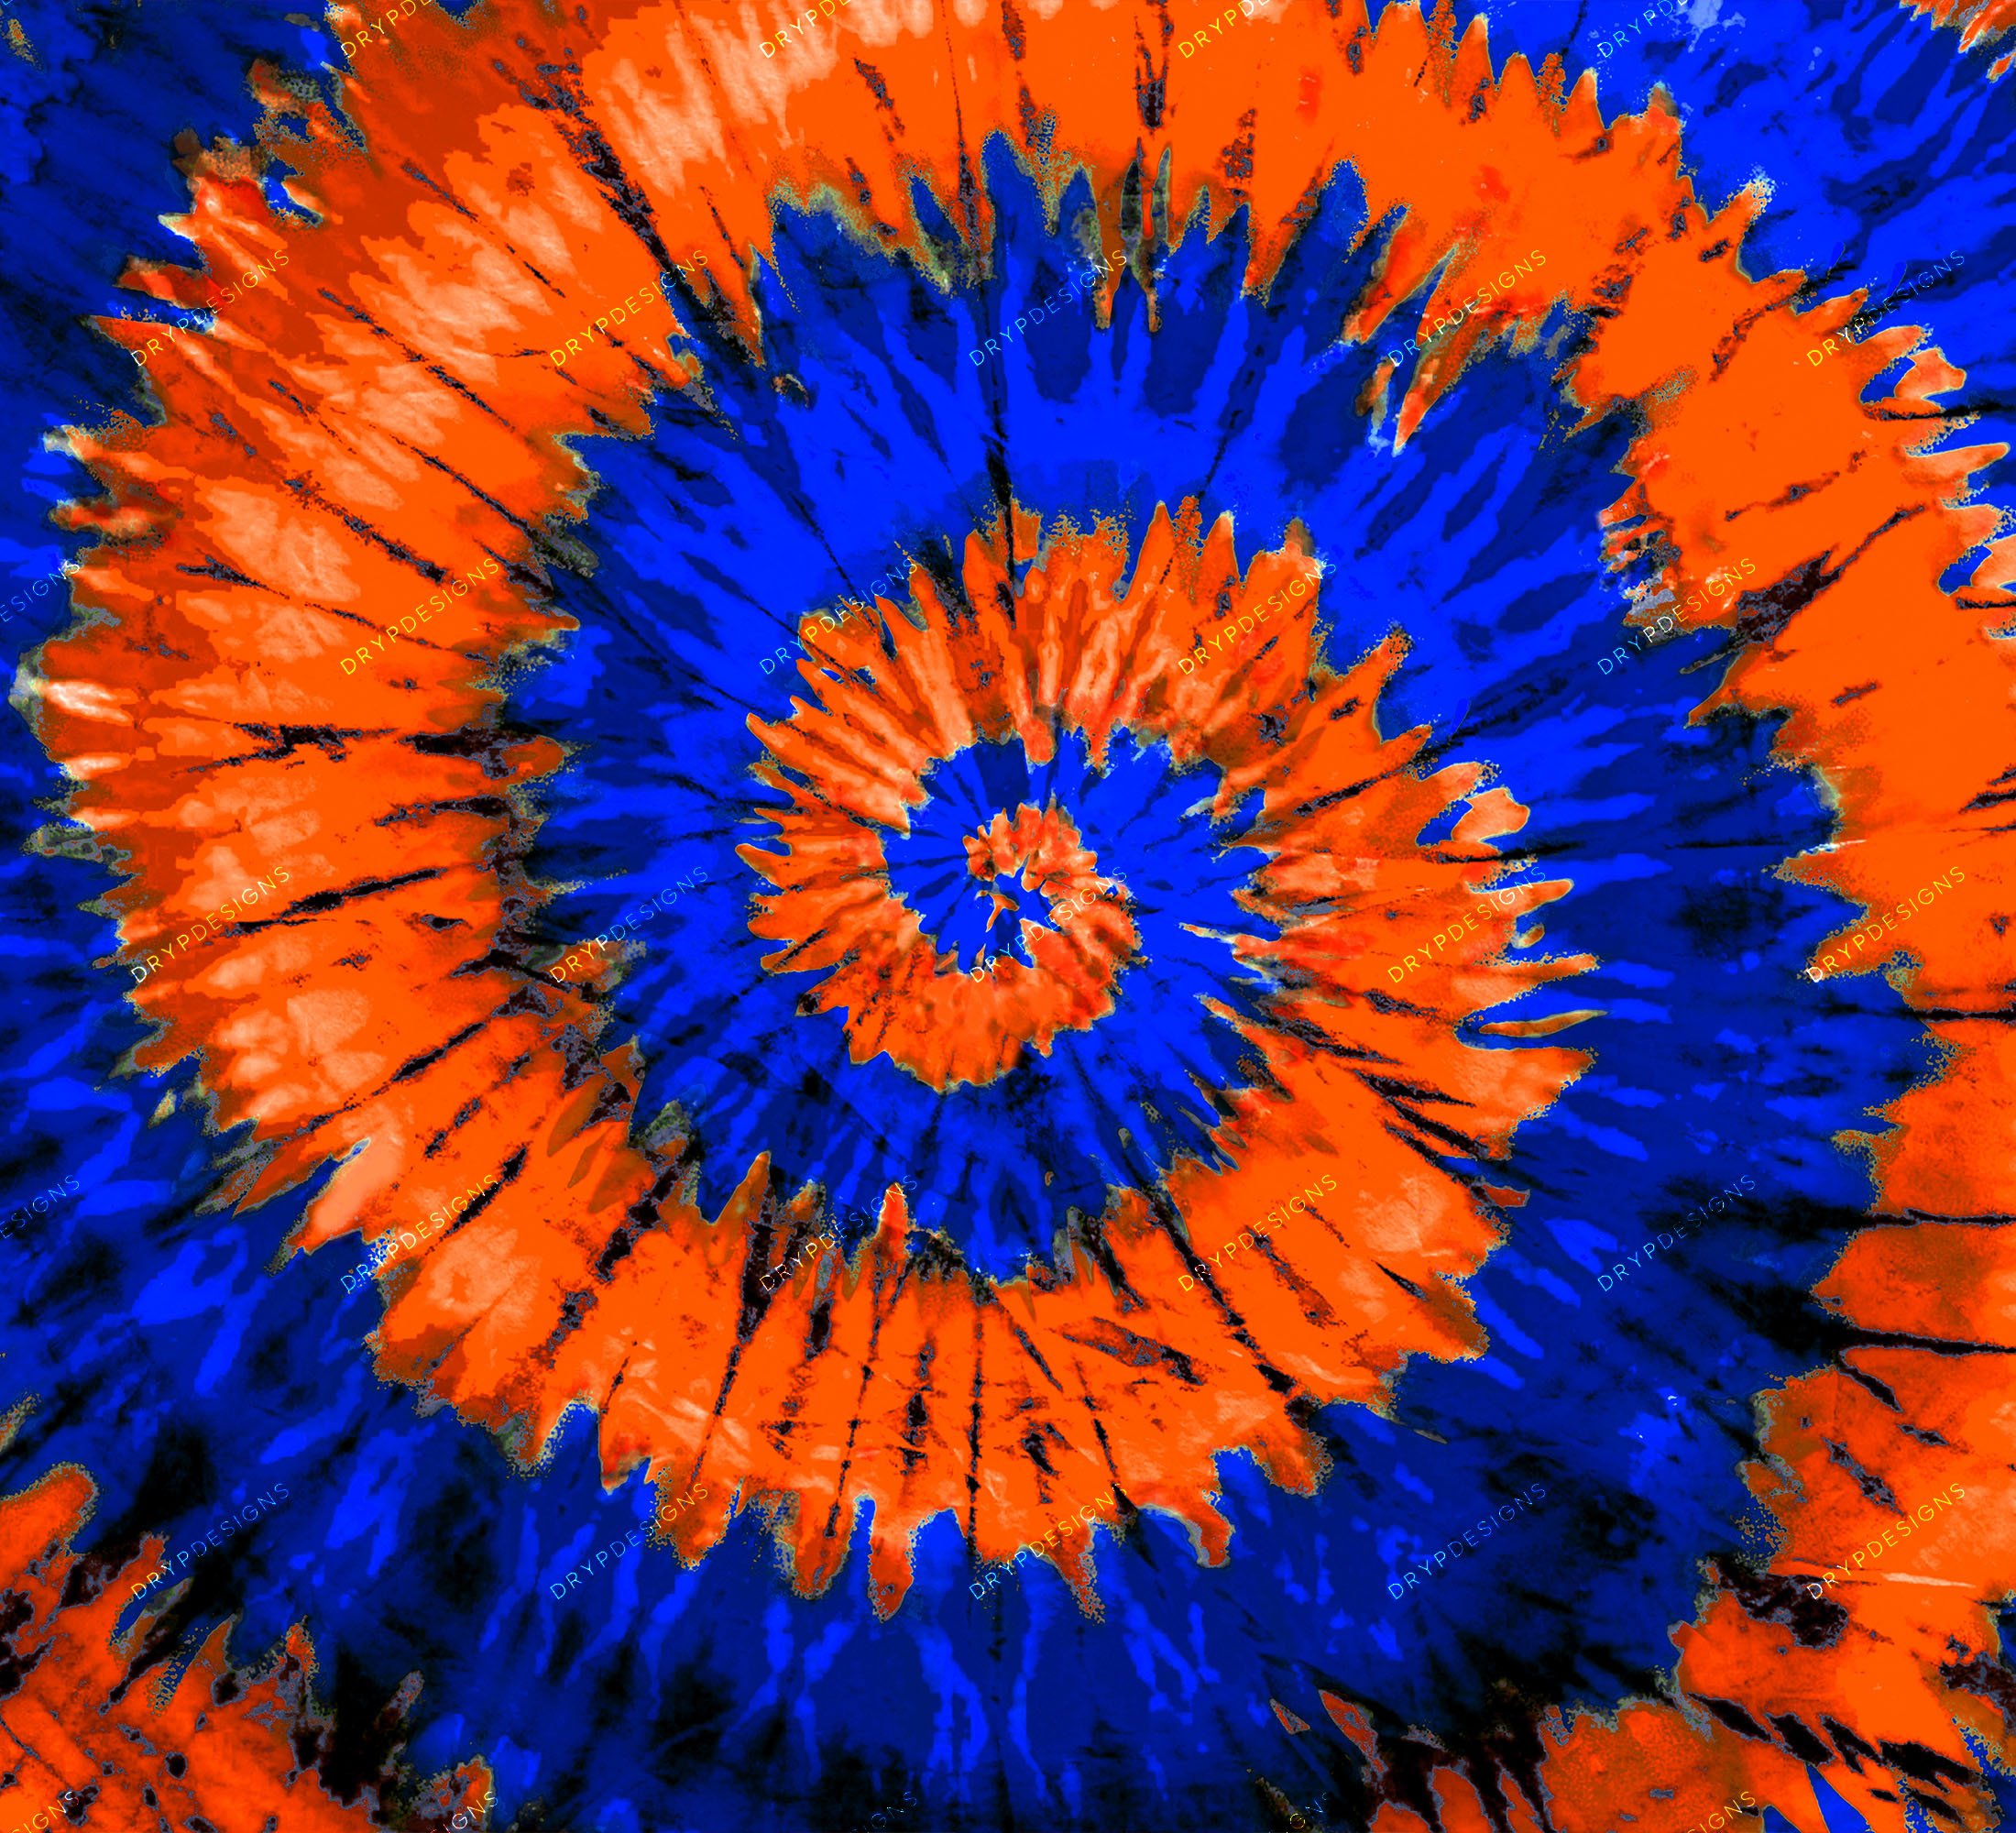 Free download Blue Tie Dye Wallpaper Tie dye 1600x1200 for your Desktop  Mobile  Tablet  Explore 50 Free Tye Dye Wallpaper  Free Turkey Wallpaper  Free Wallpaper Dye Paintball Wallpaper